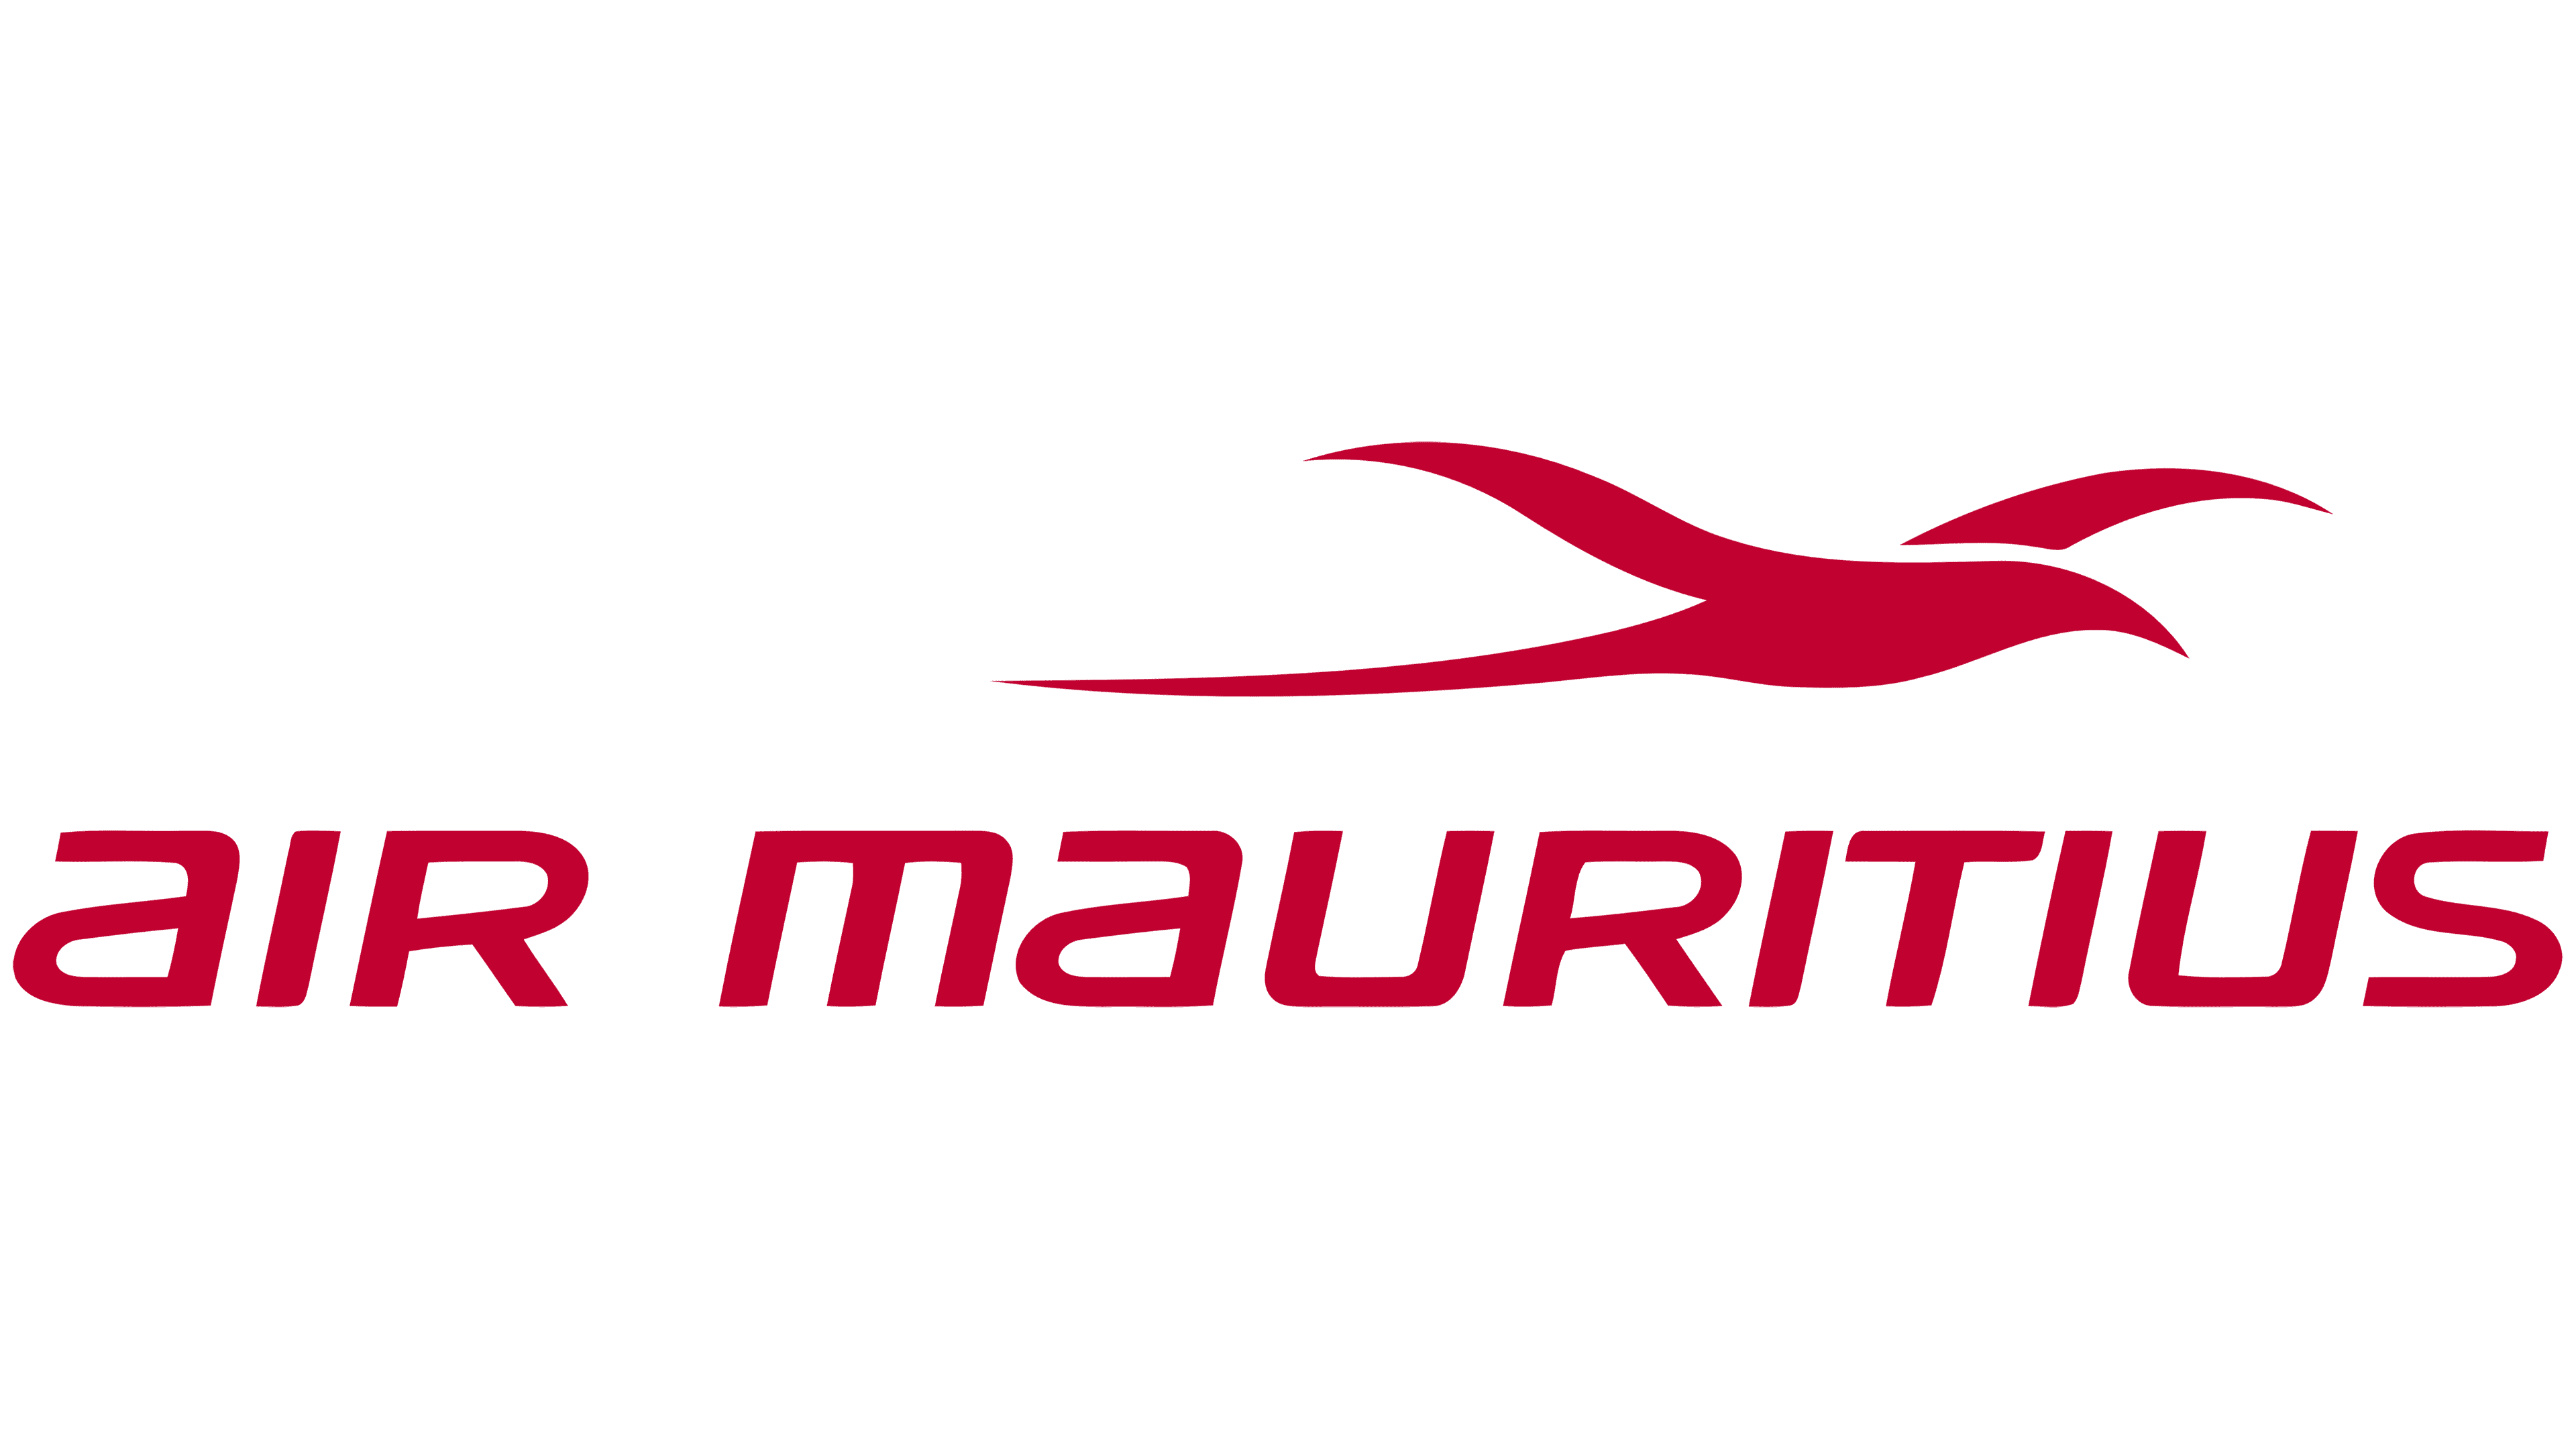 Logotipo de Air Mauritius Logo